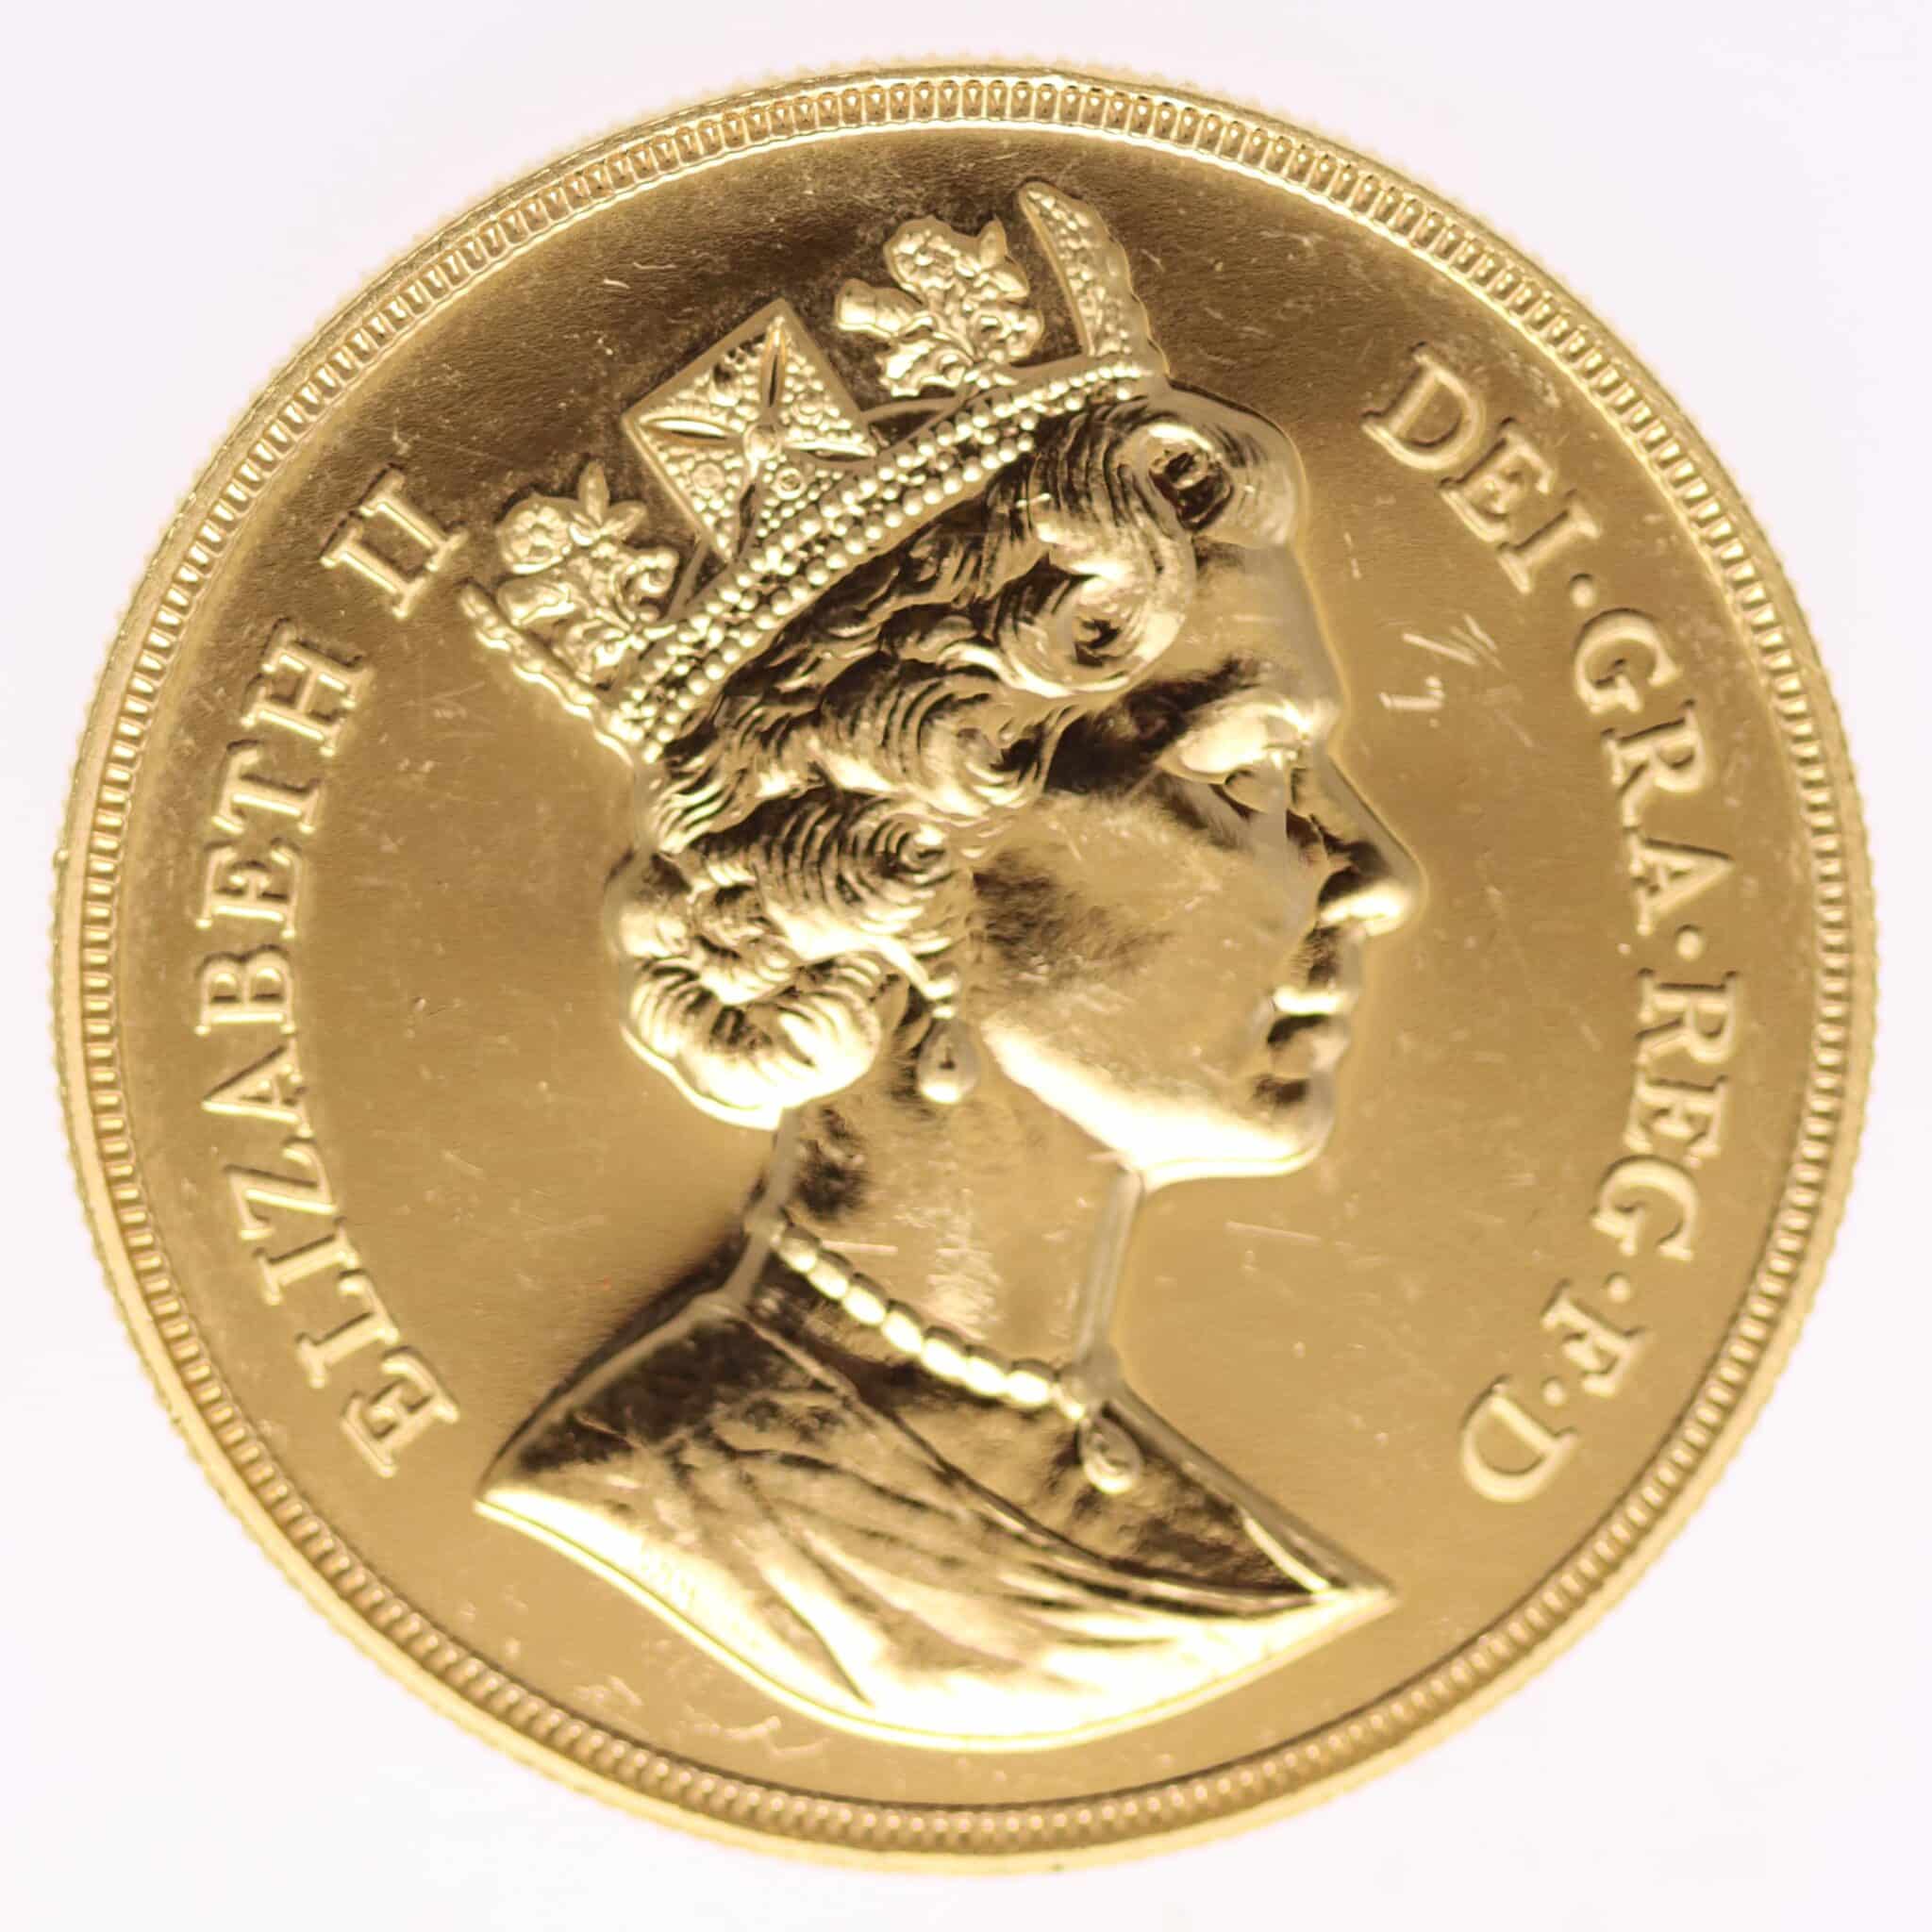 grossbritannien - Großbritannien Elisabeth II. 5 Pounds 1988